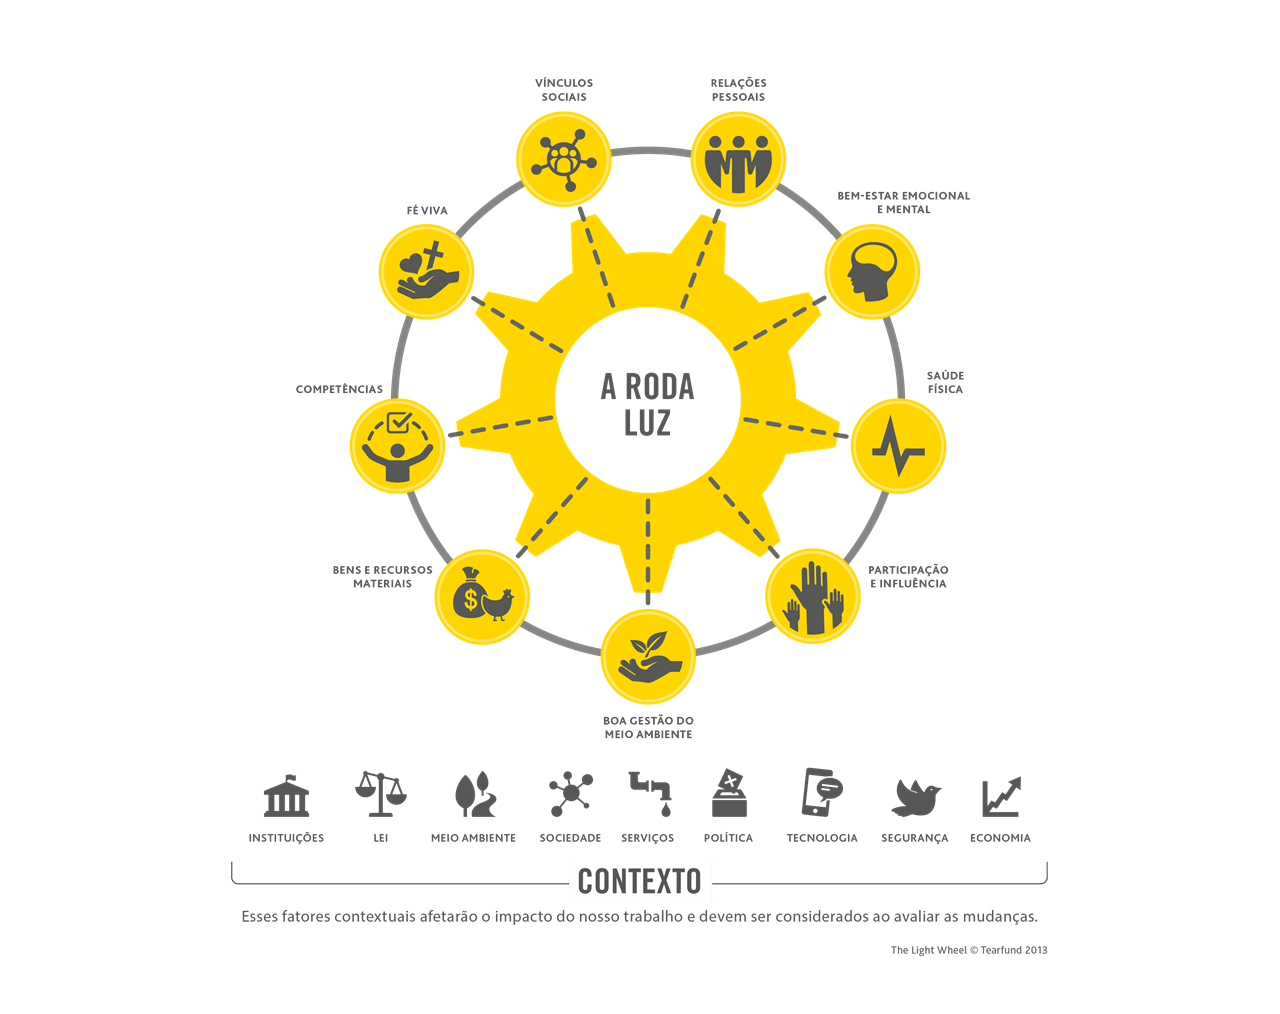 Um diagrama no formato de uma roda amarela com nove raios, cada um deles representando um “aspecto do bem-estar” que contribui para o florescimento humano e a transformação da vida das pessoas e comunidades